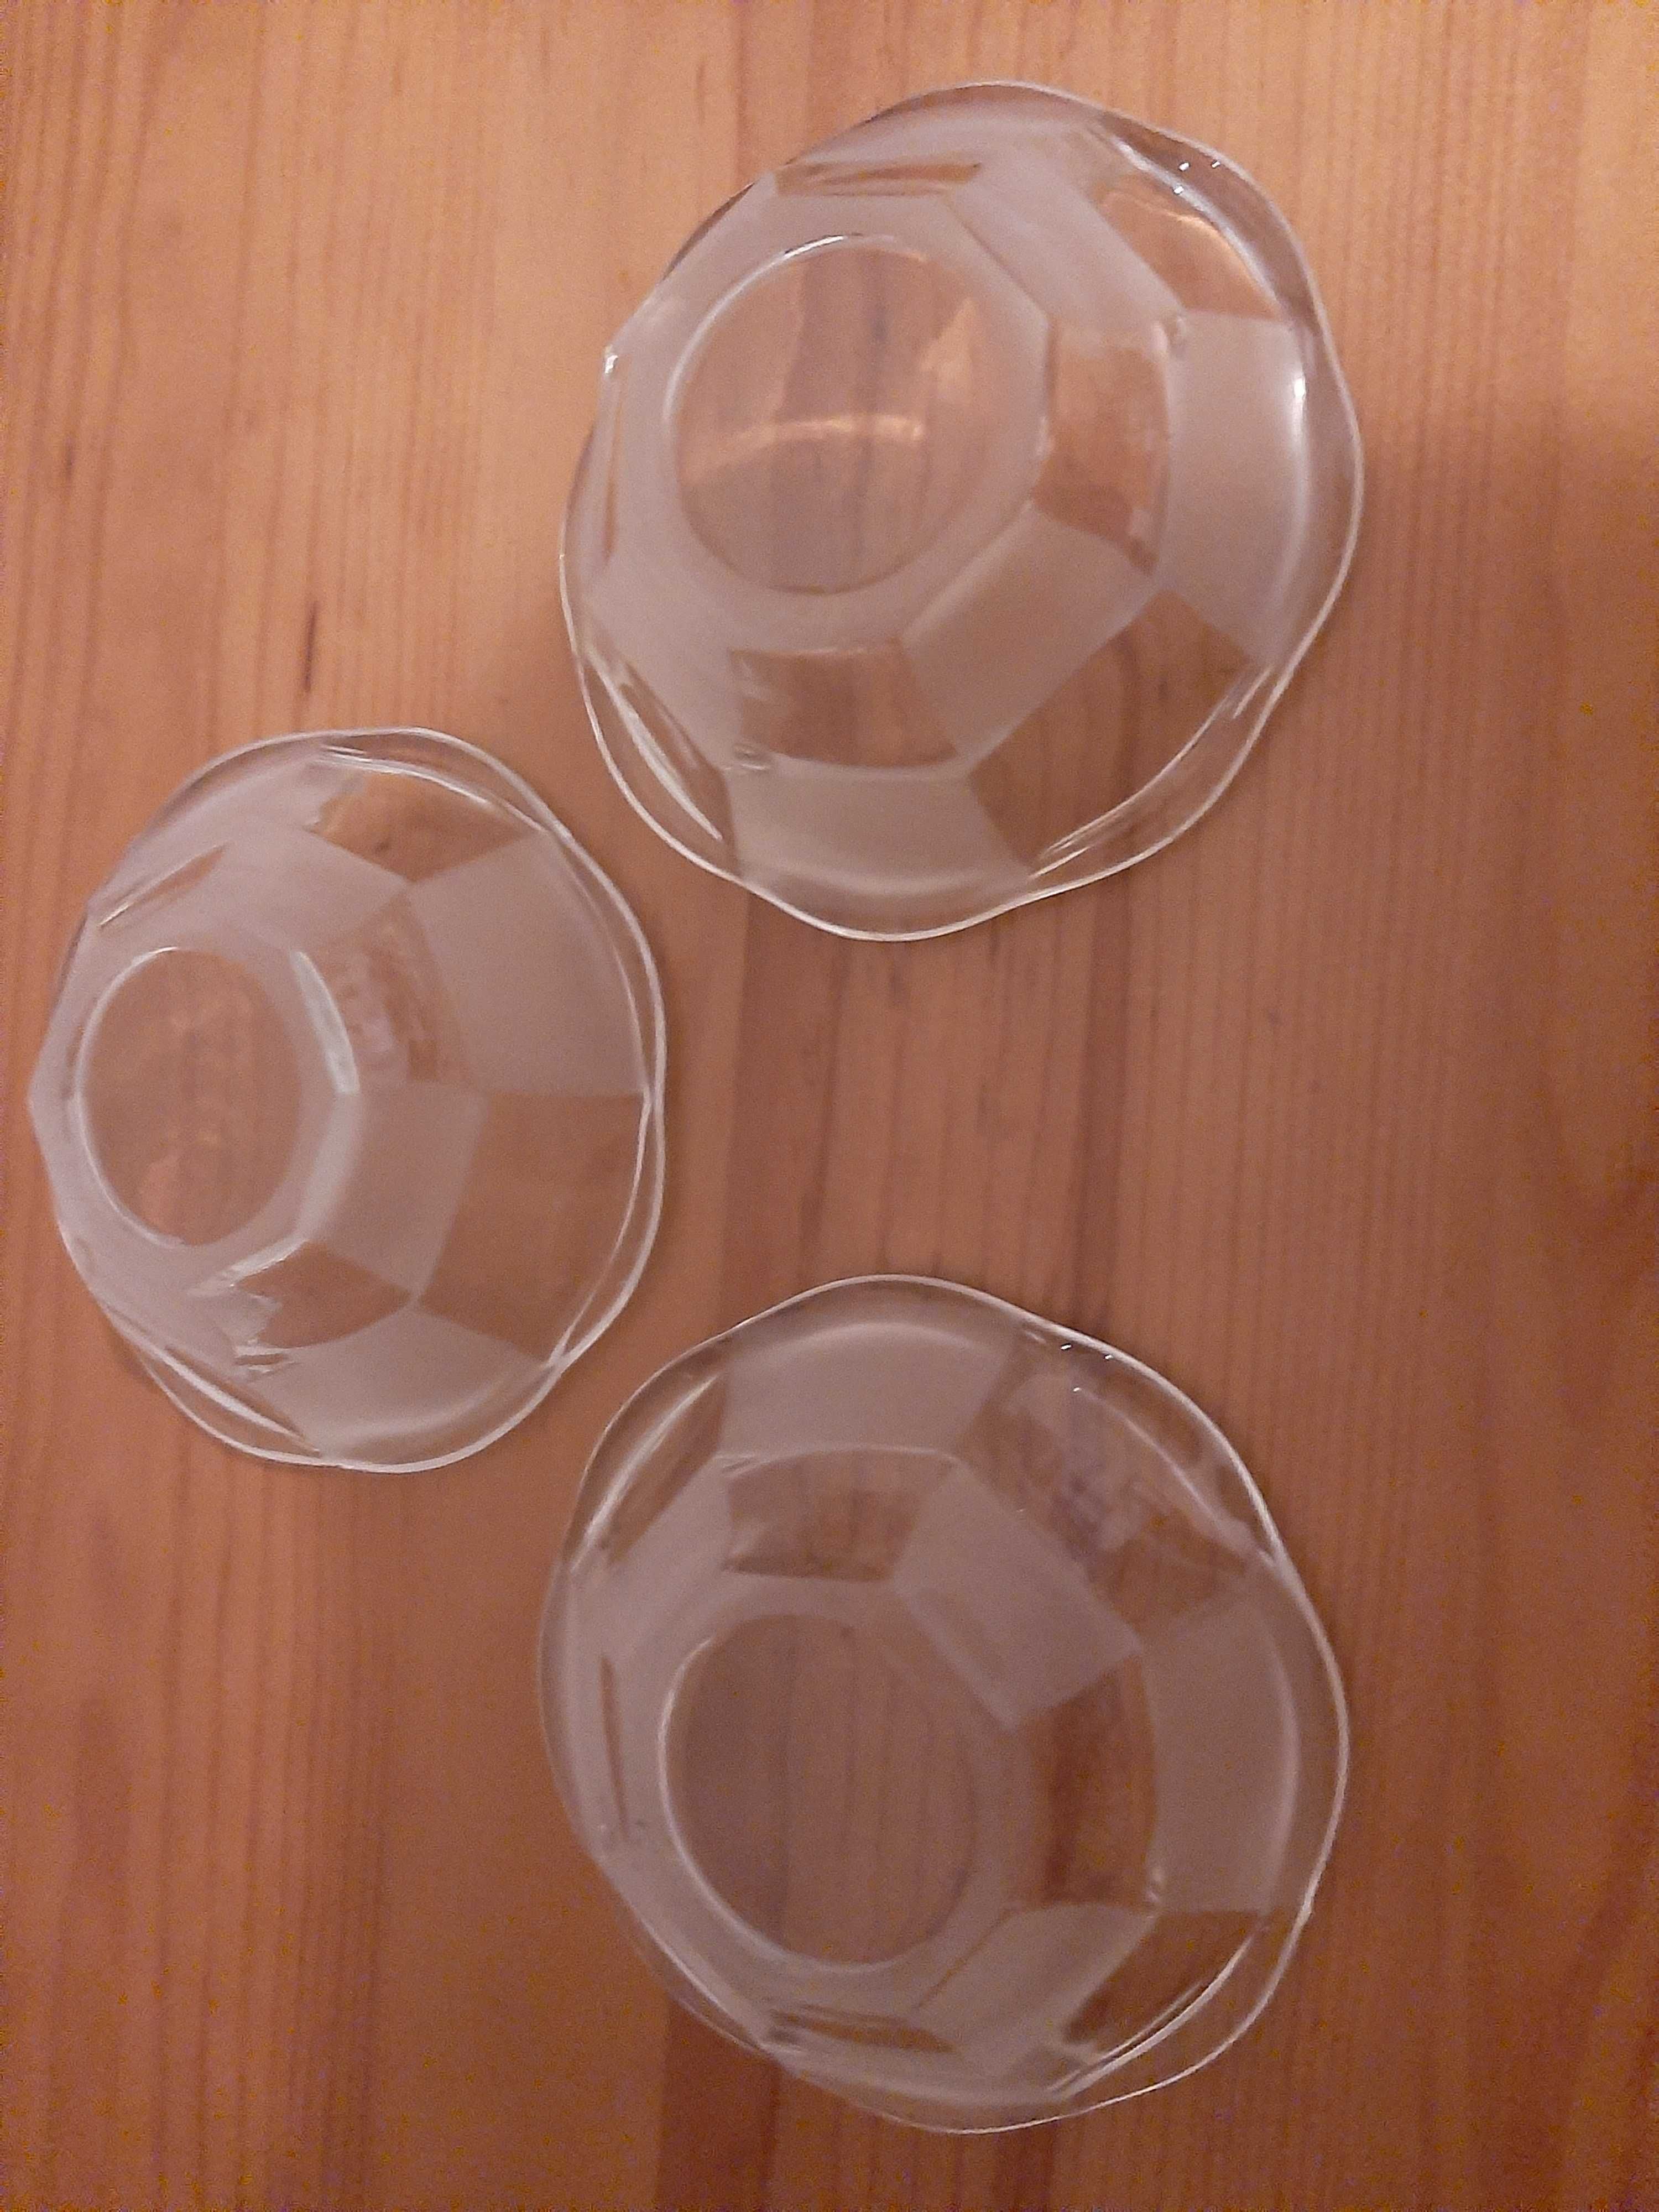 Saladeira em vidro com 3 taças anos 60